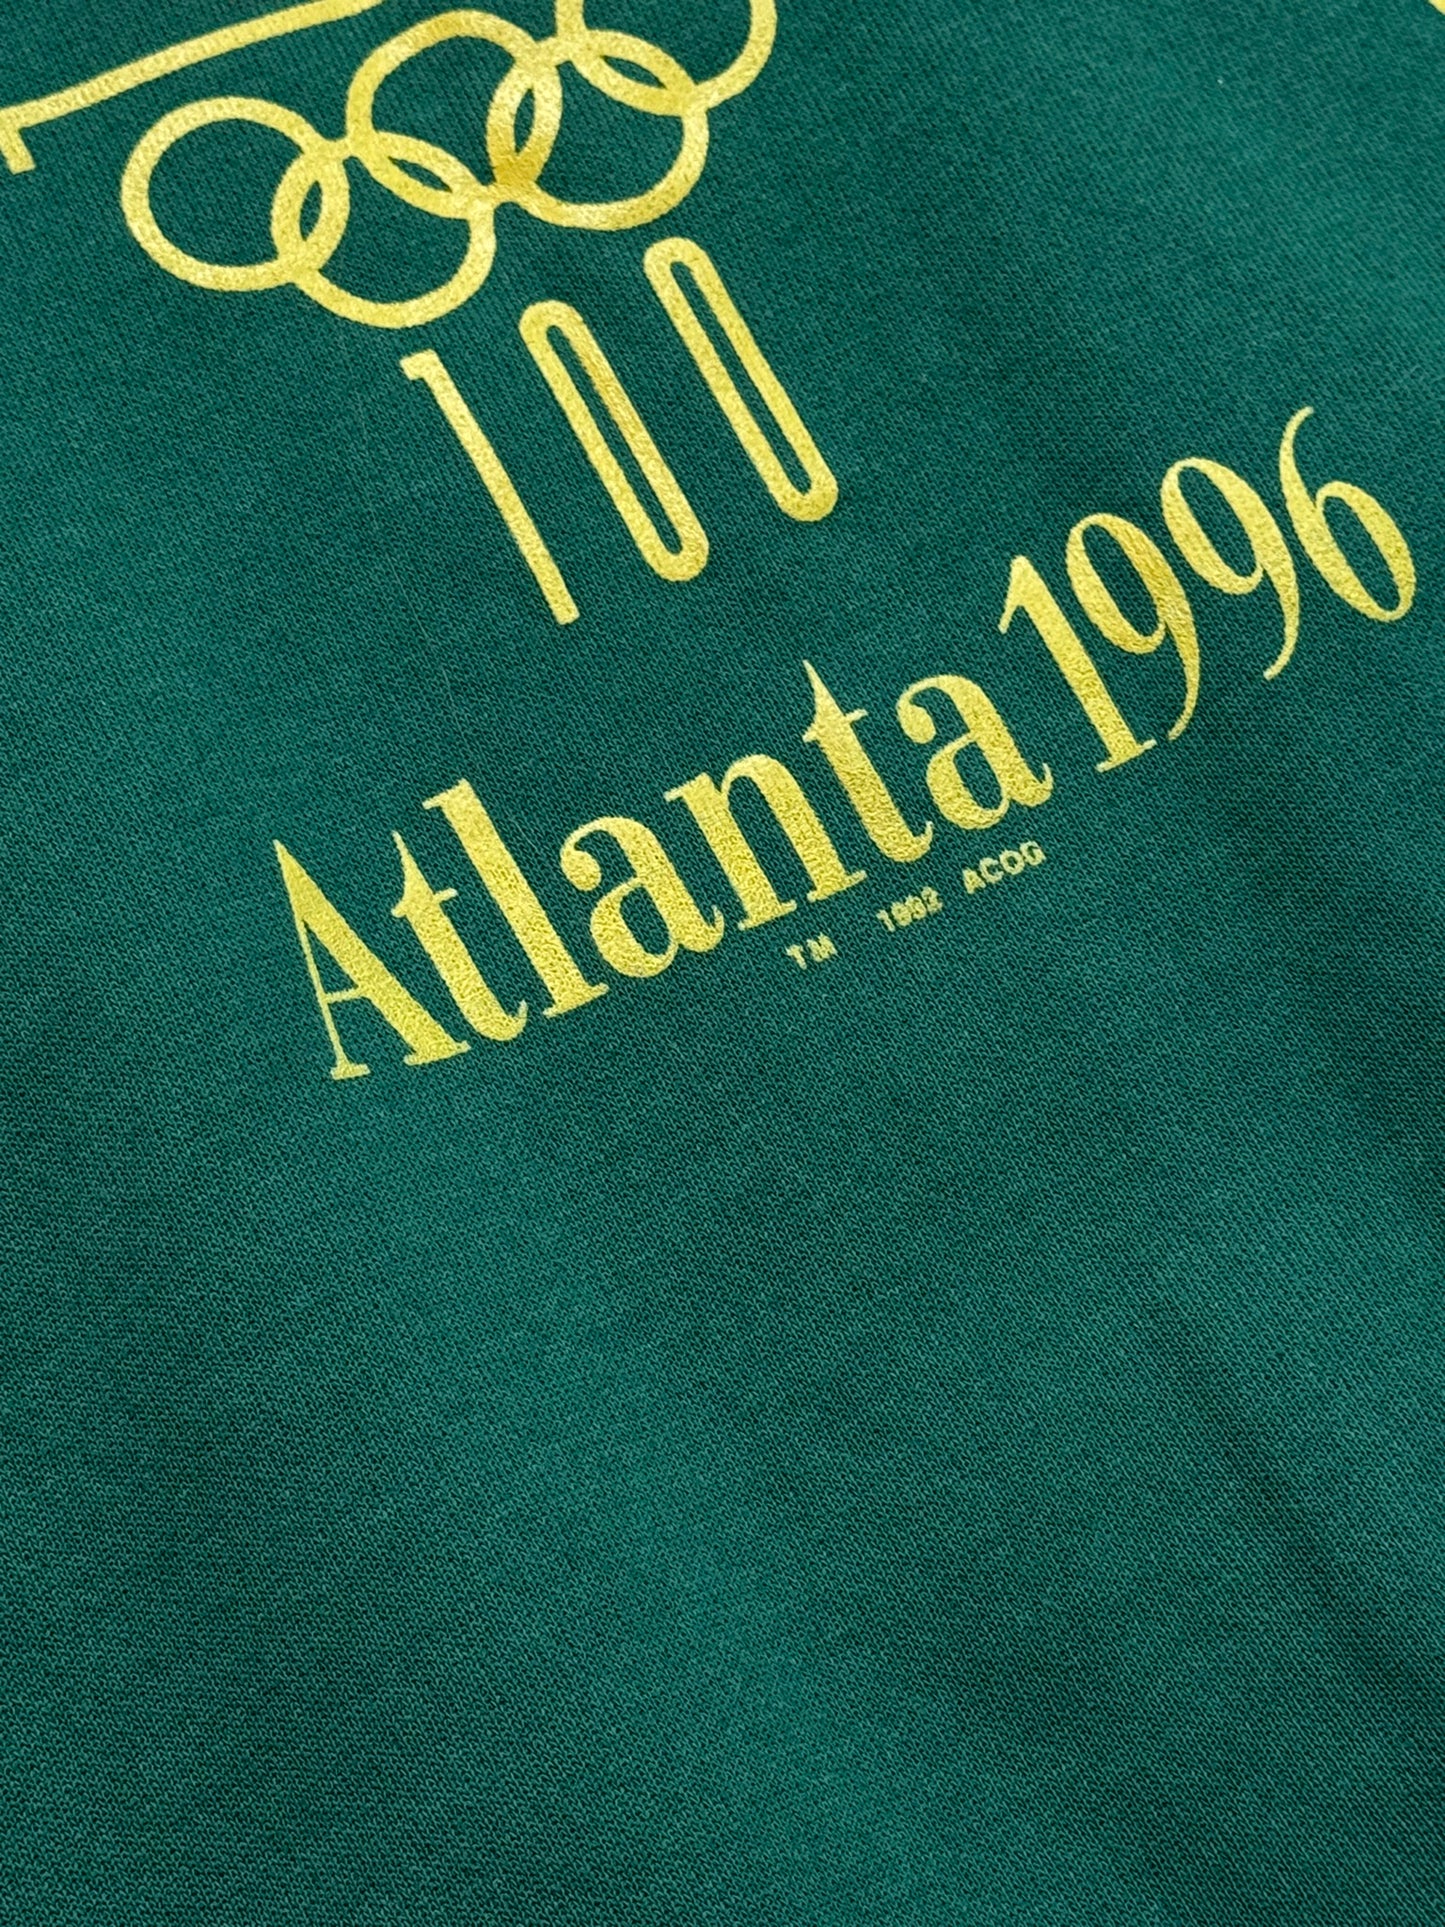 Vintage 1996 Atlanta Olympics Crewneck Size L